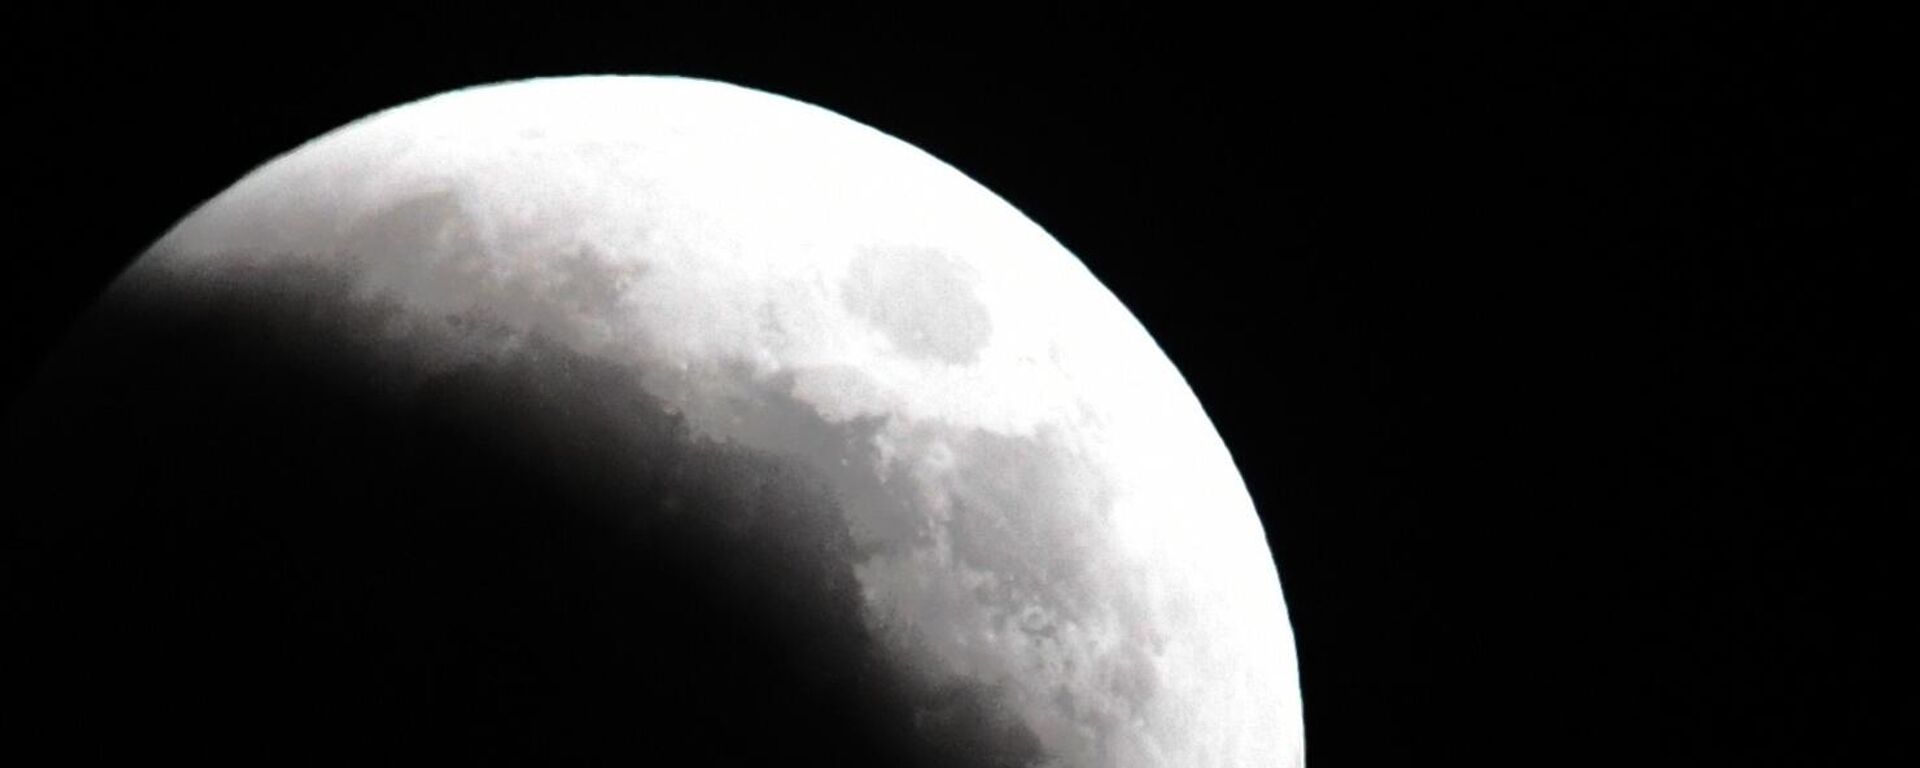 القمر خلال الكسوف في فلاديفوستوك الروسية. في 8 نوفمبر، بعد الظهر، سيُغطى القمر جزئيًا بظل الأرض، وسيغطي القمر أورانوس ويتحول إلى اللون الأحمر القرمزي (القمر الدموي). سيكمل هذا الحدث ممر الكسوف الذي بدأ في أكتوبر/ تشرين الأول. في المرة القادمة يمكن رؤية هذه الظاهرة فقط في غضون سنوات قليلة. - سبوتنيك عربي, 1920, 21.12.2022